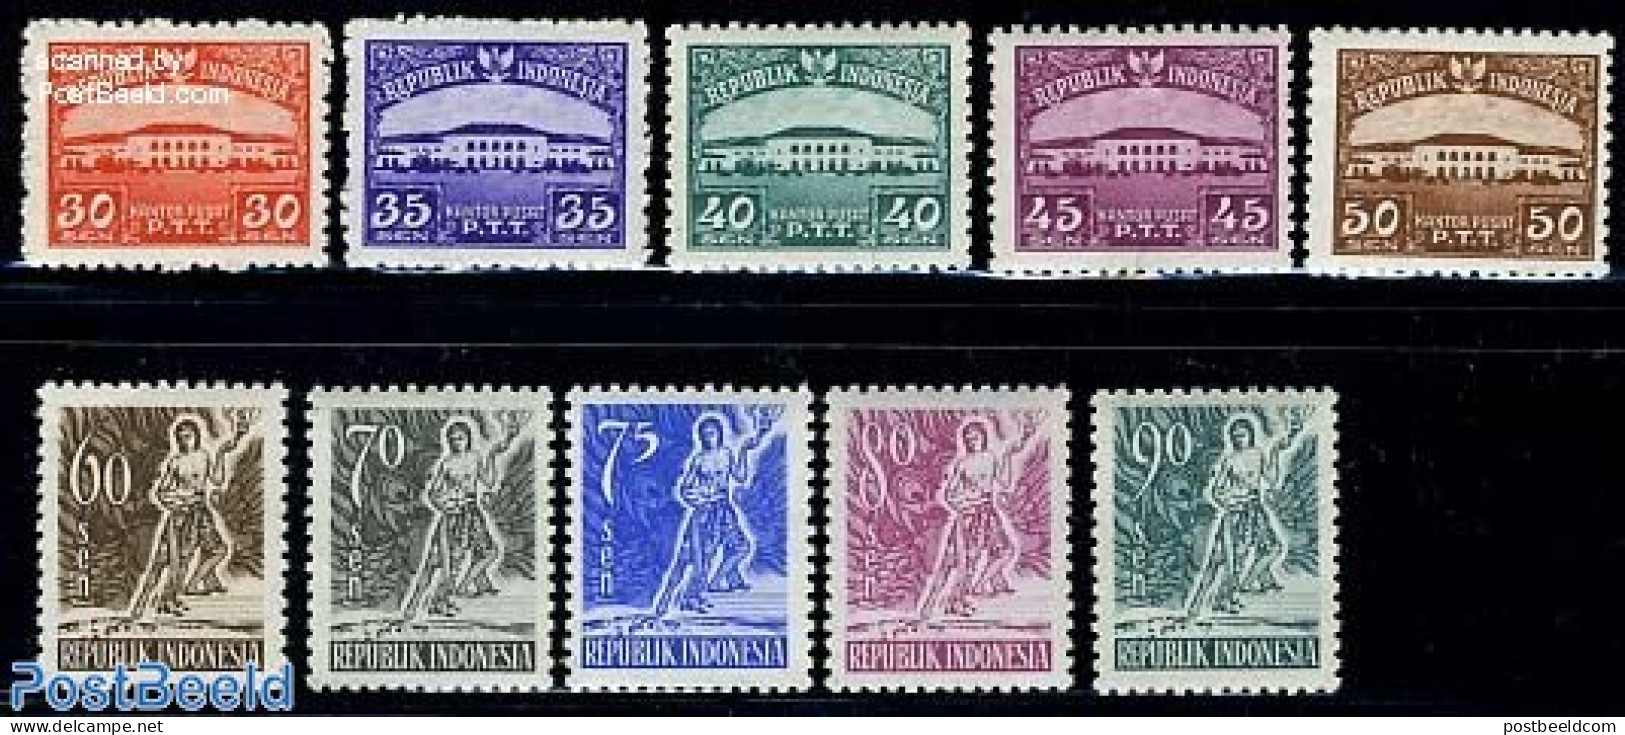 Indonesia 1953 Definitives 10v, Mint NH - Indonésie